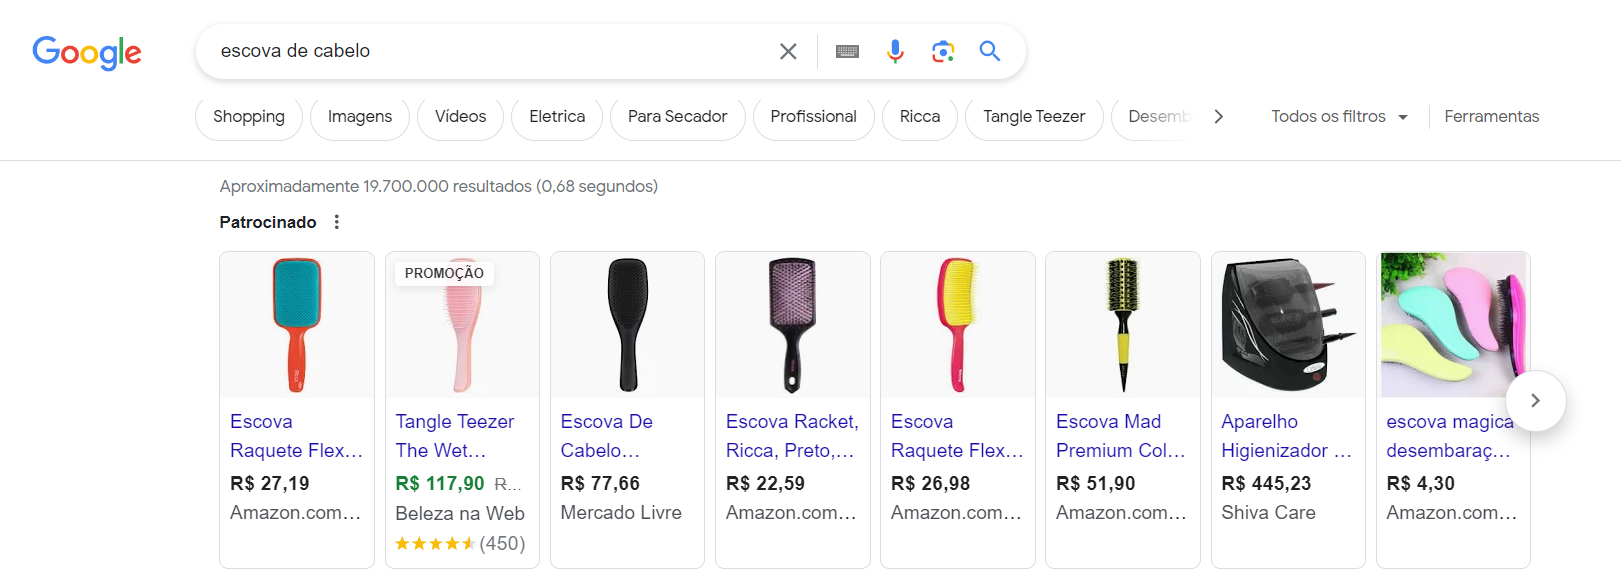 Resultado de pesquisa do Google Shopping.